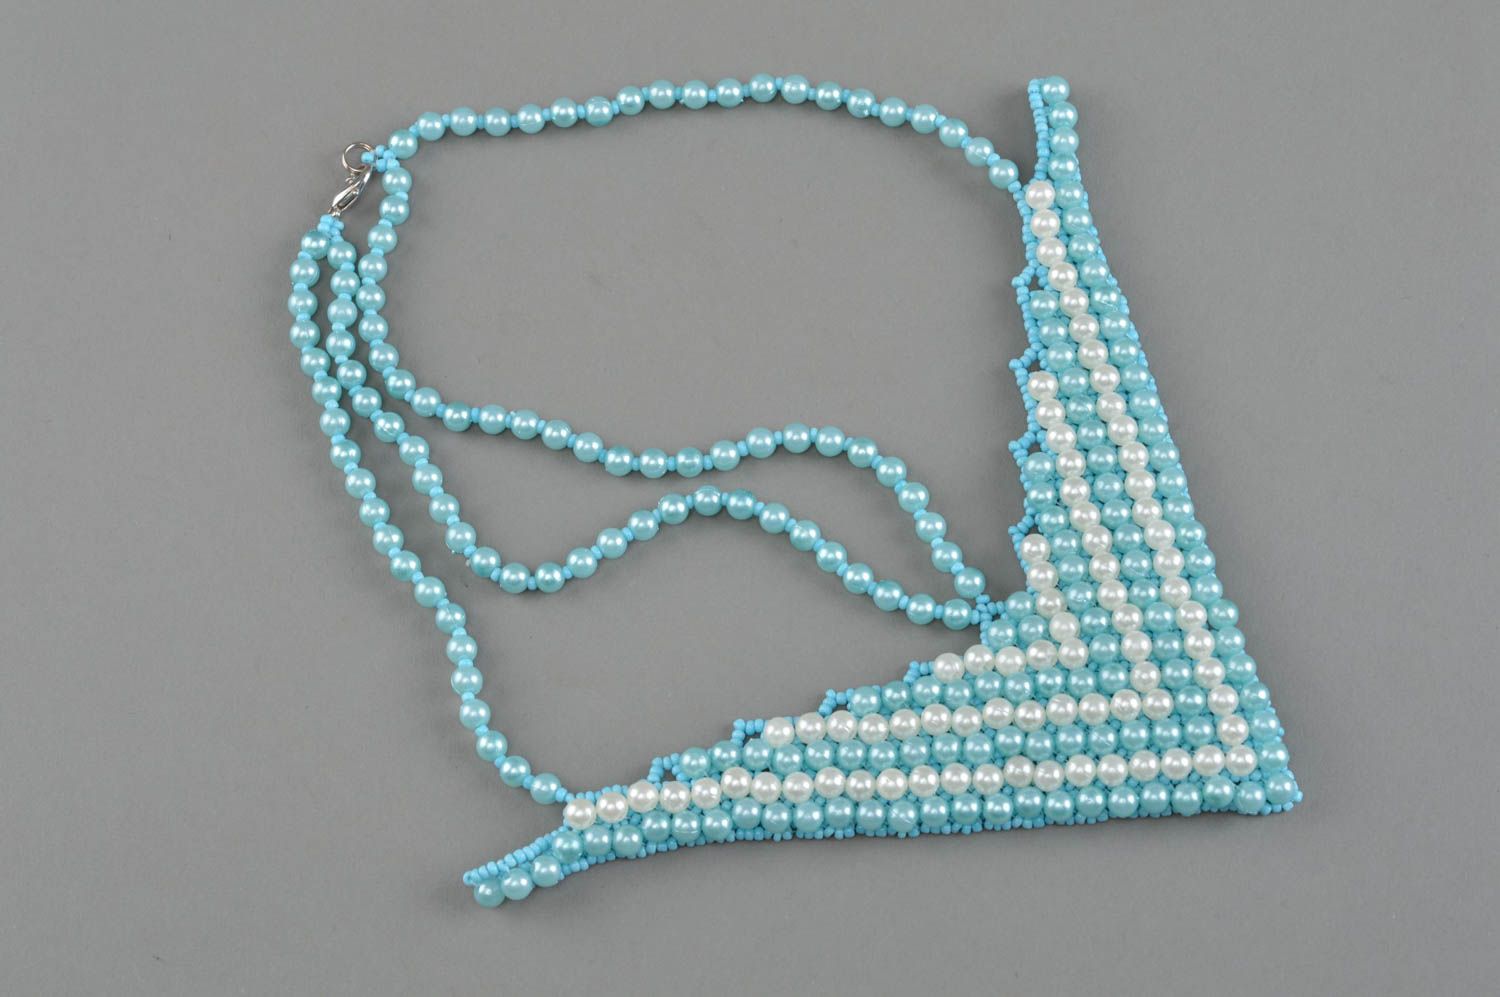 Handmade beaded necklace blue and white elegant accessory stylish jewelry photo 2